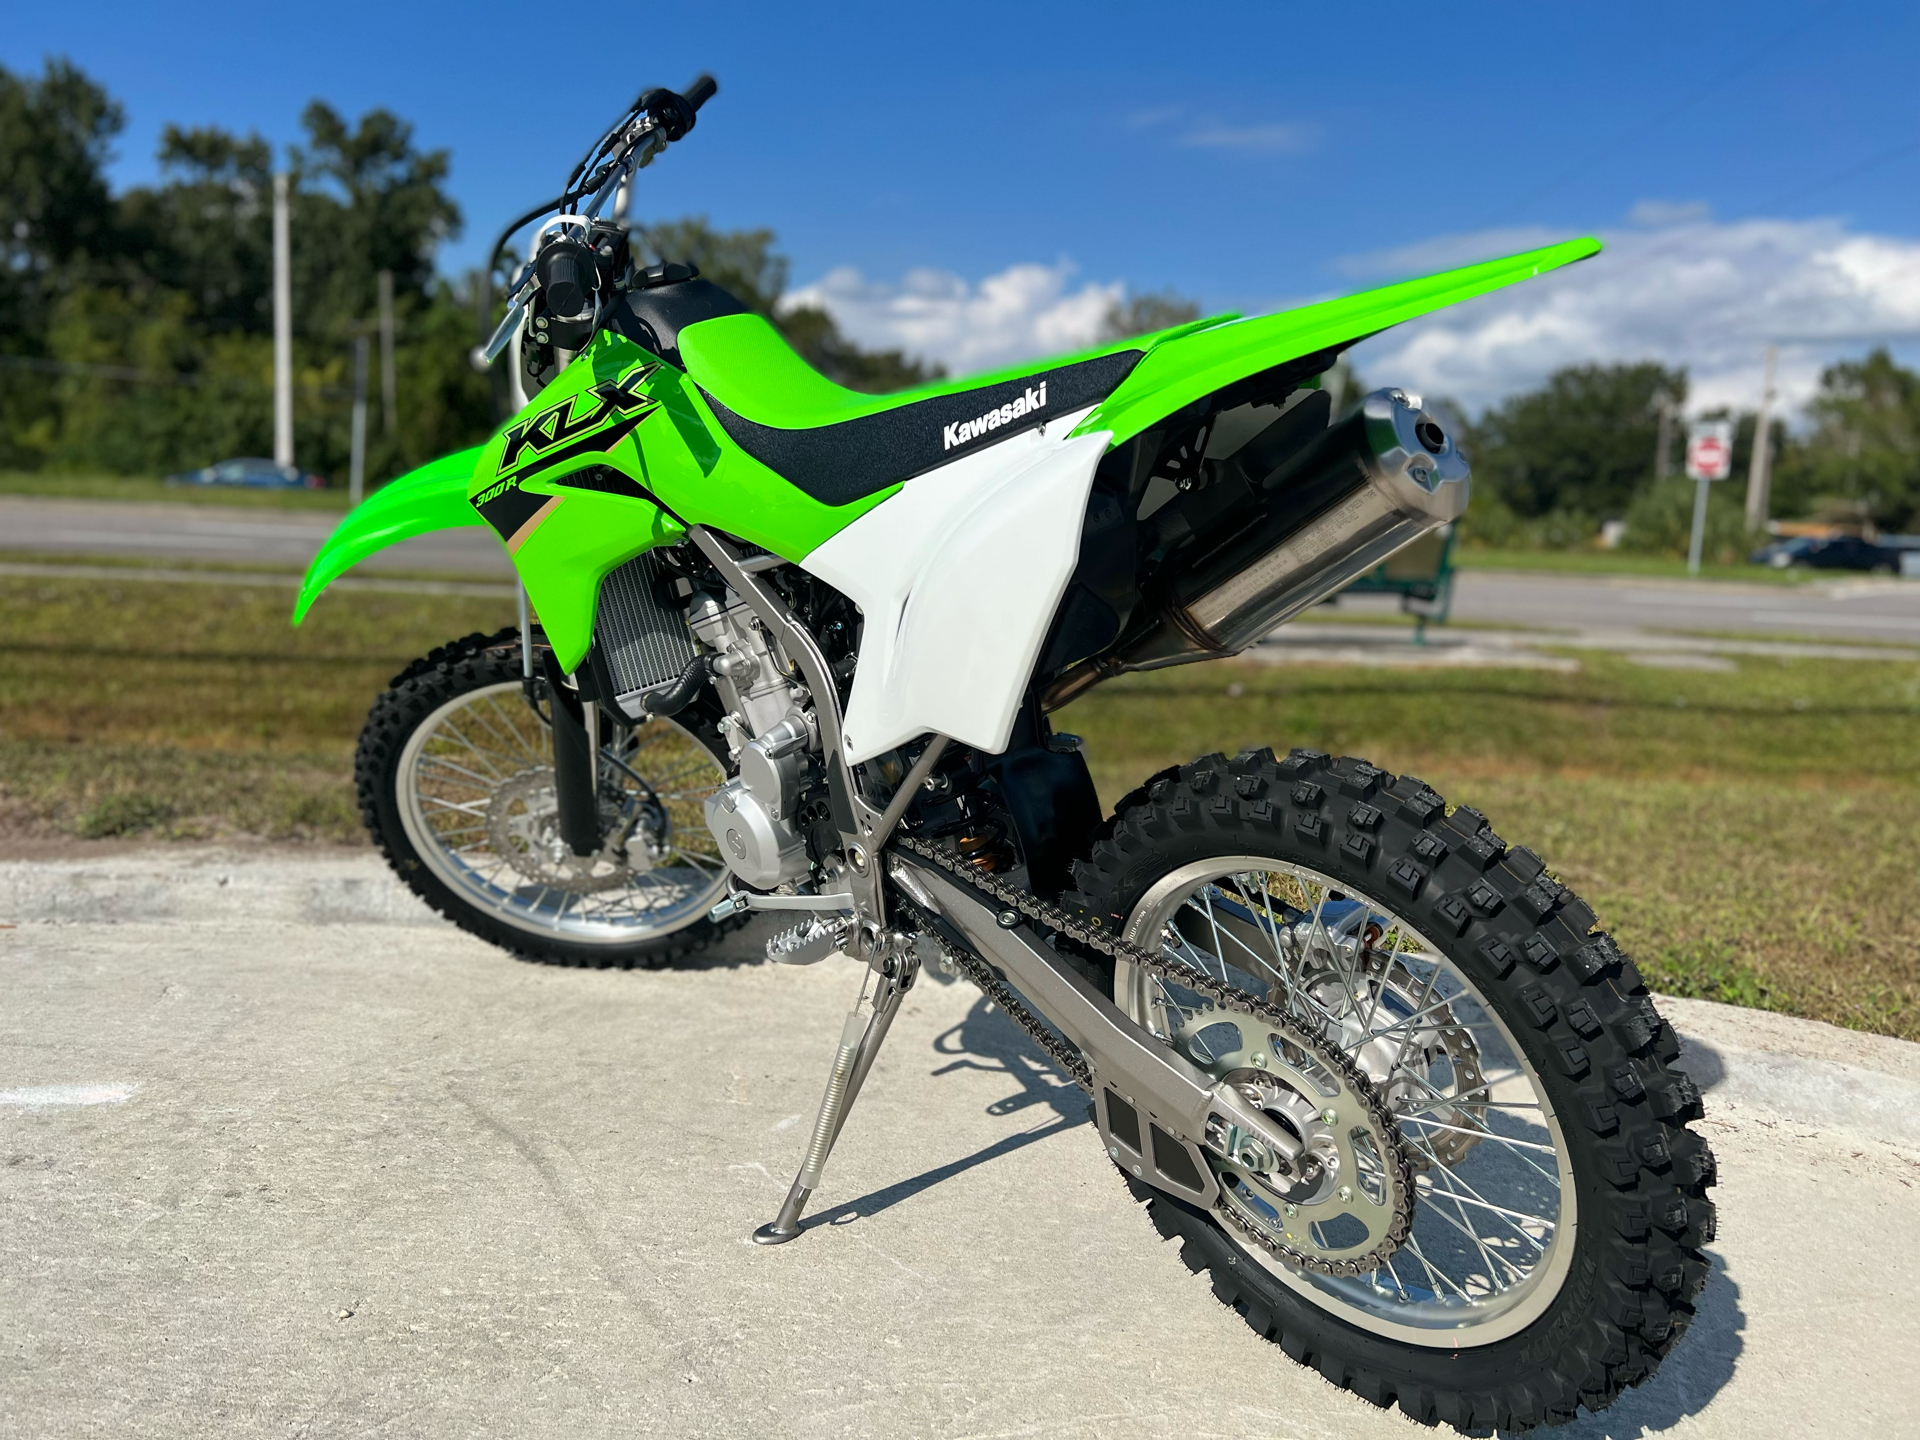 2022 Kawasaki KLX 300R in Orlando, Florida - Photo 8